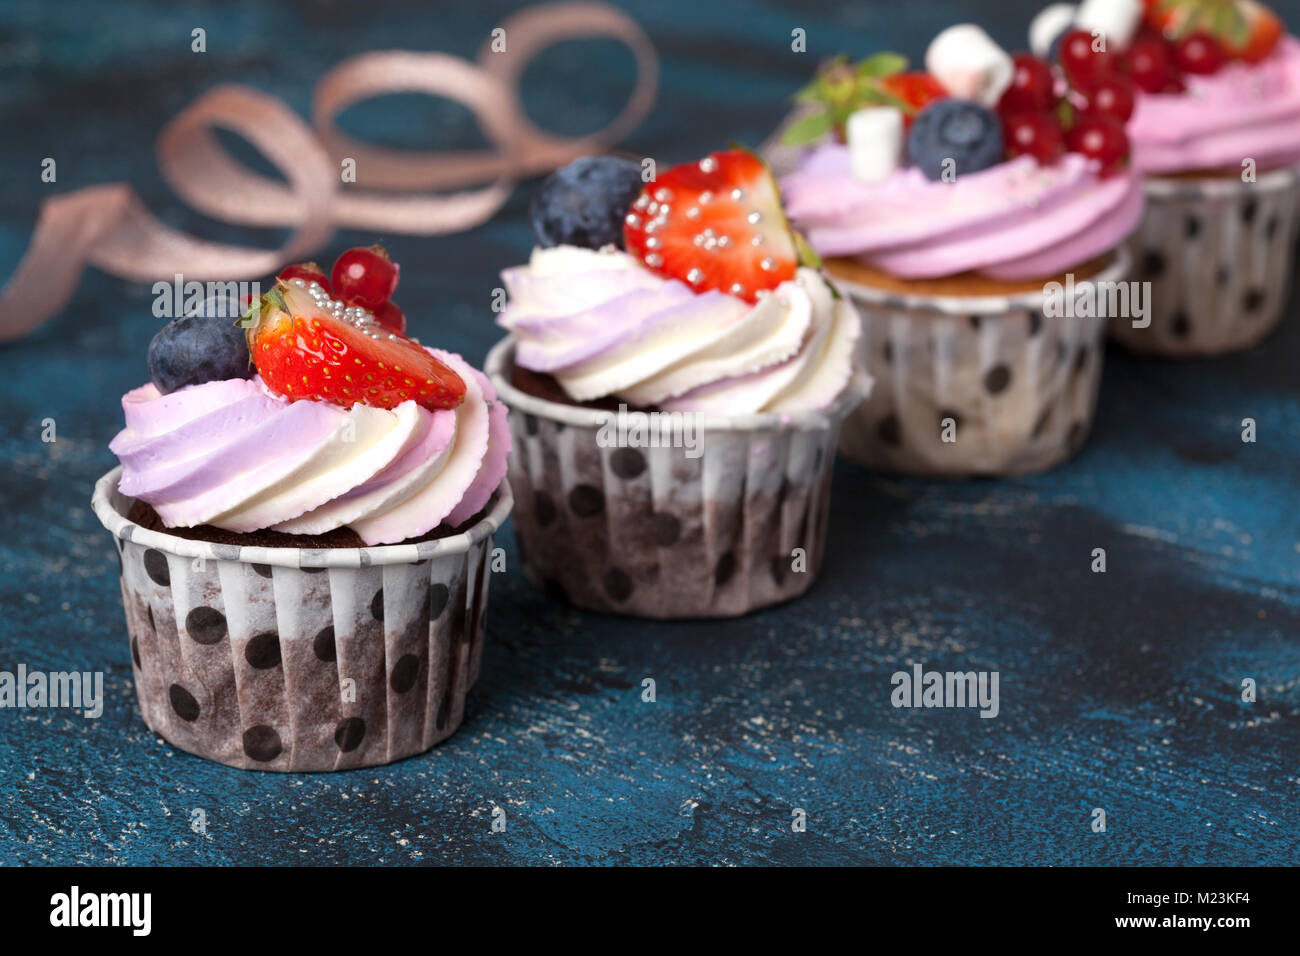 Vanille et chocolat Maison cupcakes avec de la crème et les baies roses cap sur un fond bleu foncé. Banque D'Images